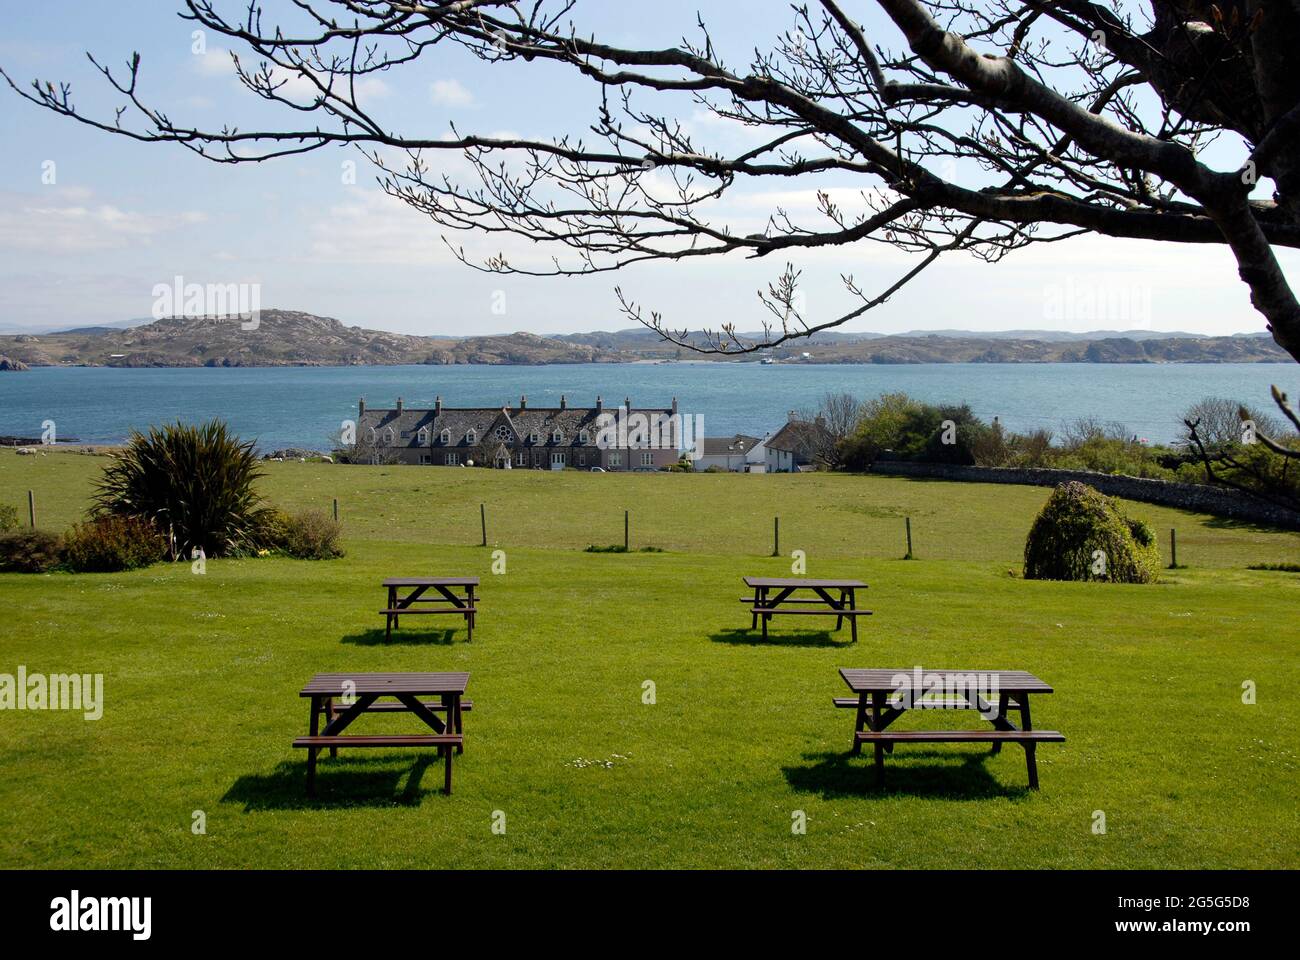 Quattro tavoli da picnic non occupati allestiti in una piacevole area verde che si affaccia sul mare, Iona, Scozia Foto Stock